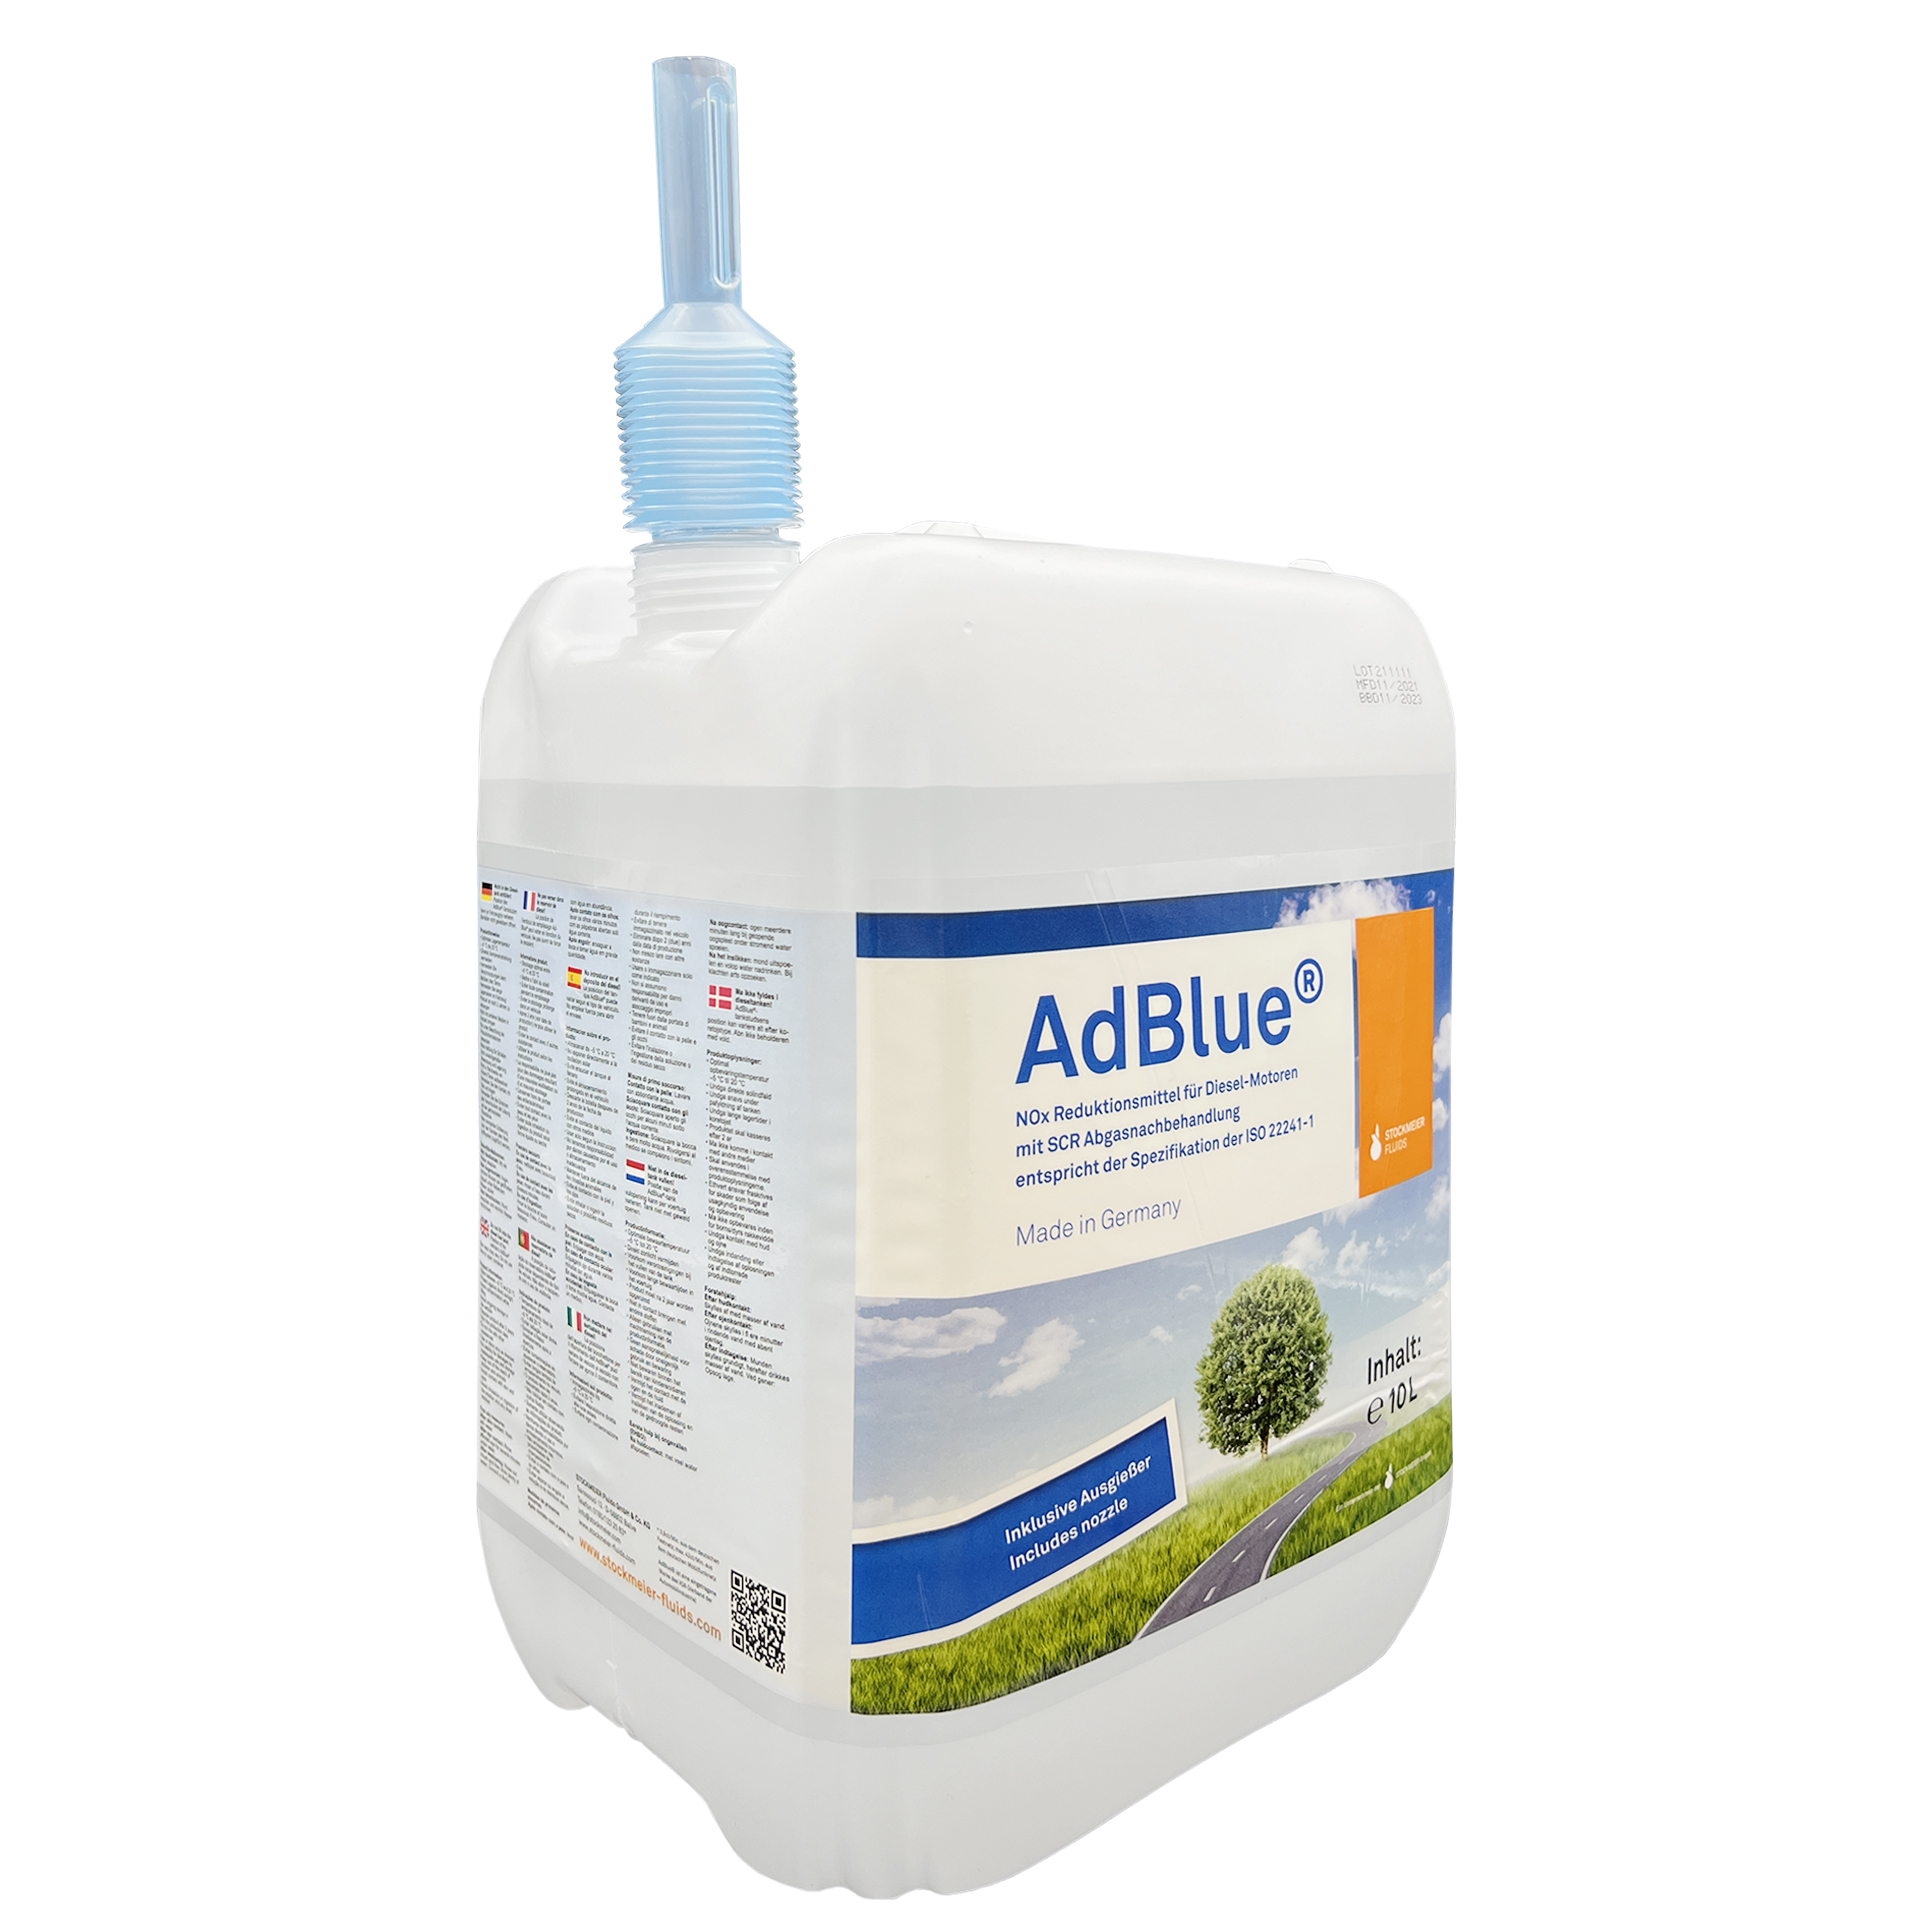 AdBlue tanken oder Kanister kaufen? • Clever unterwegs